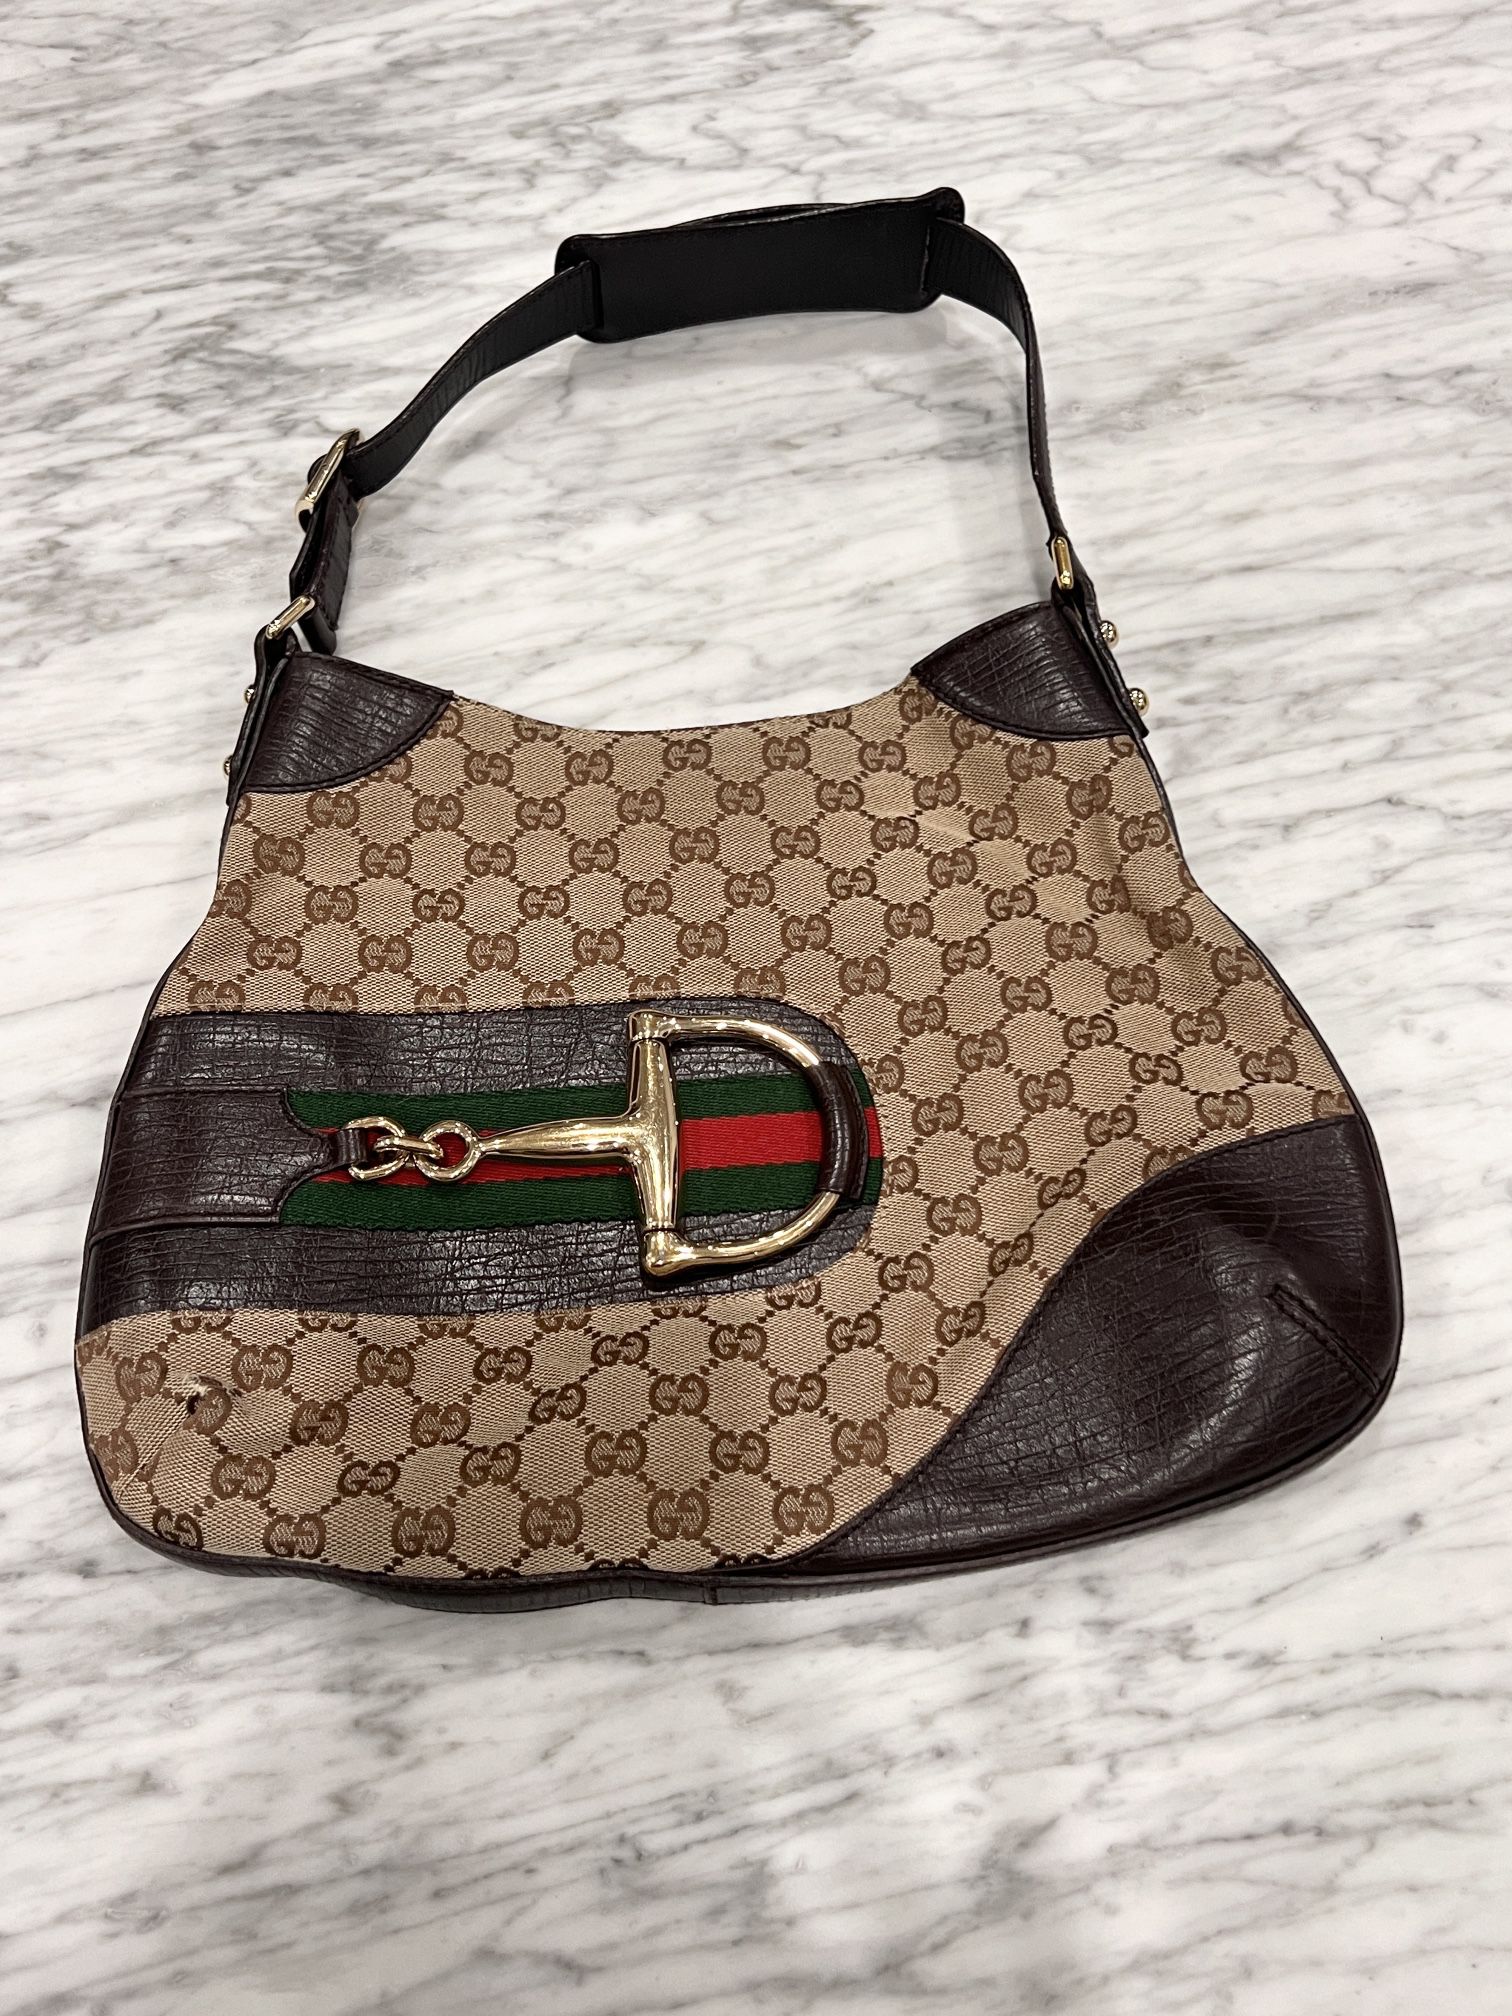 Gucci Hobo Shoulder Bag 